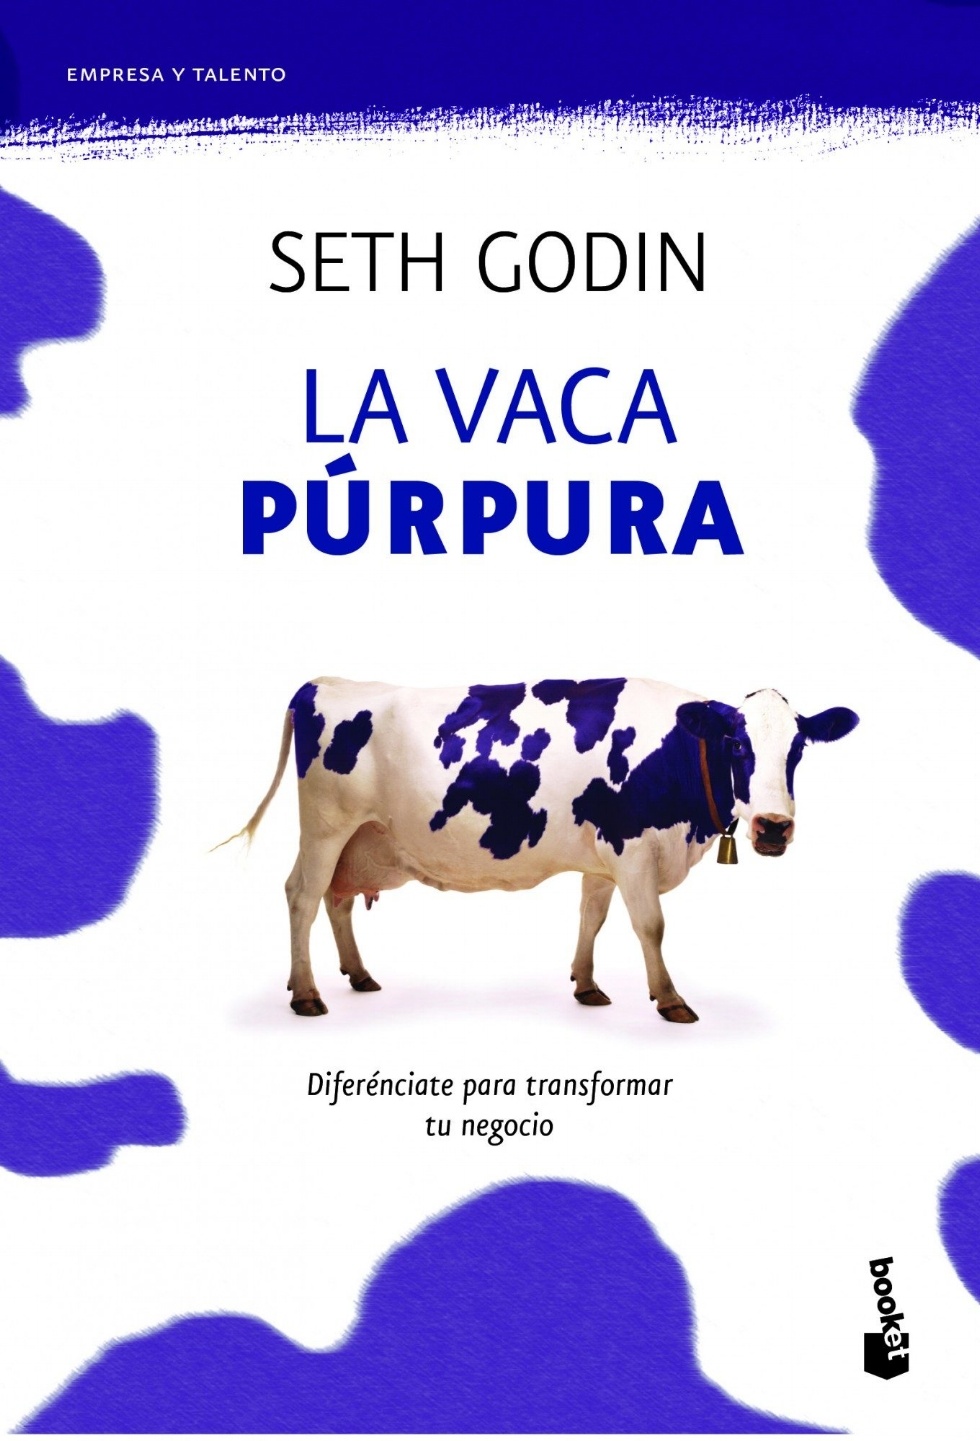 La vaca púrpura. Seth Godin